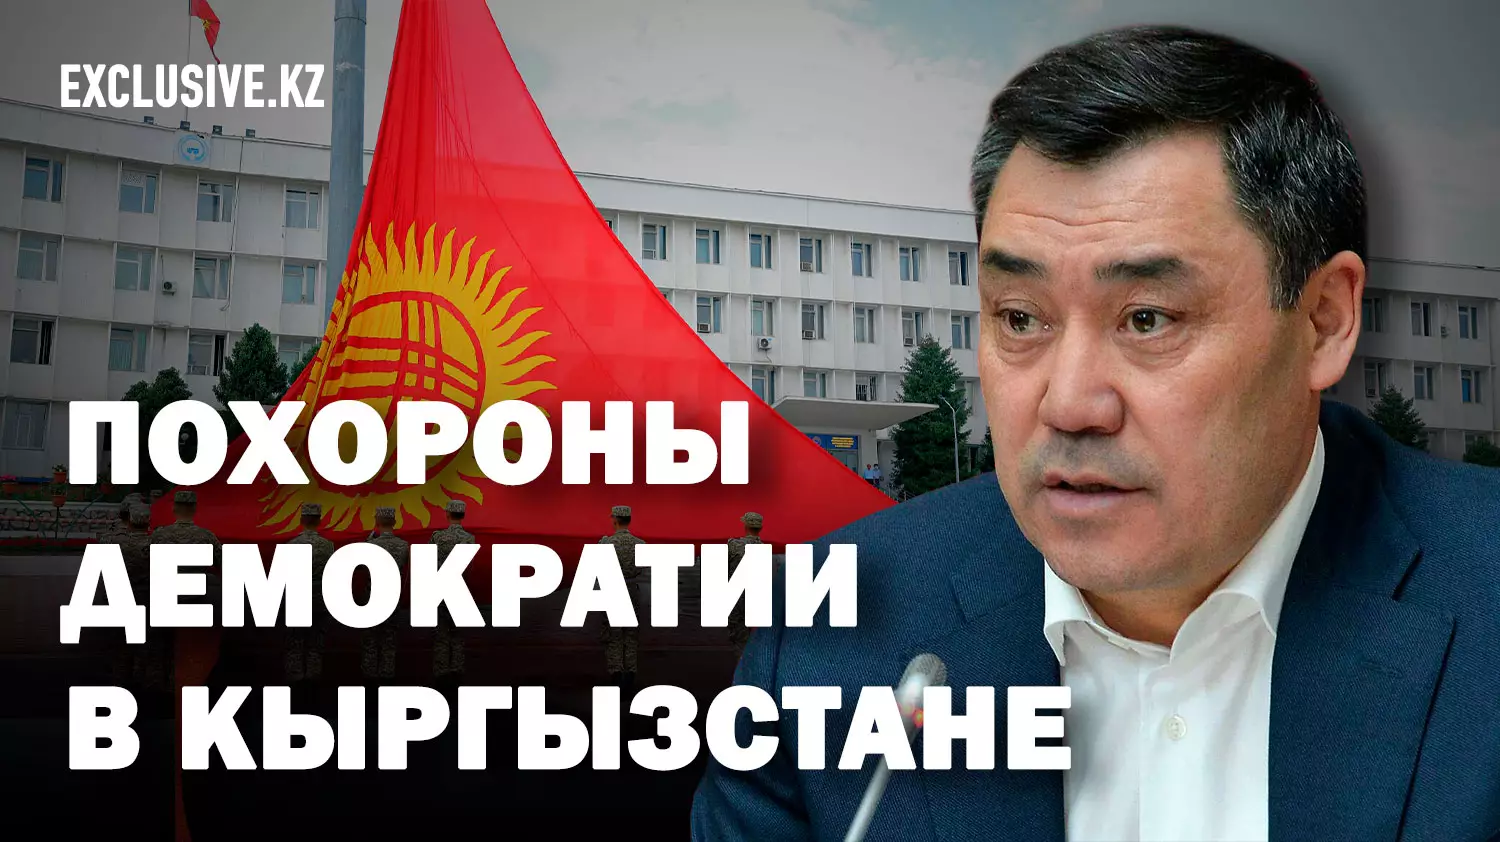 Жаңа Кыргызстан: аресты, цензура, запреты